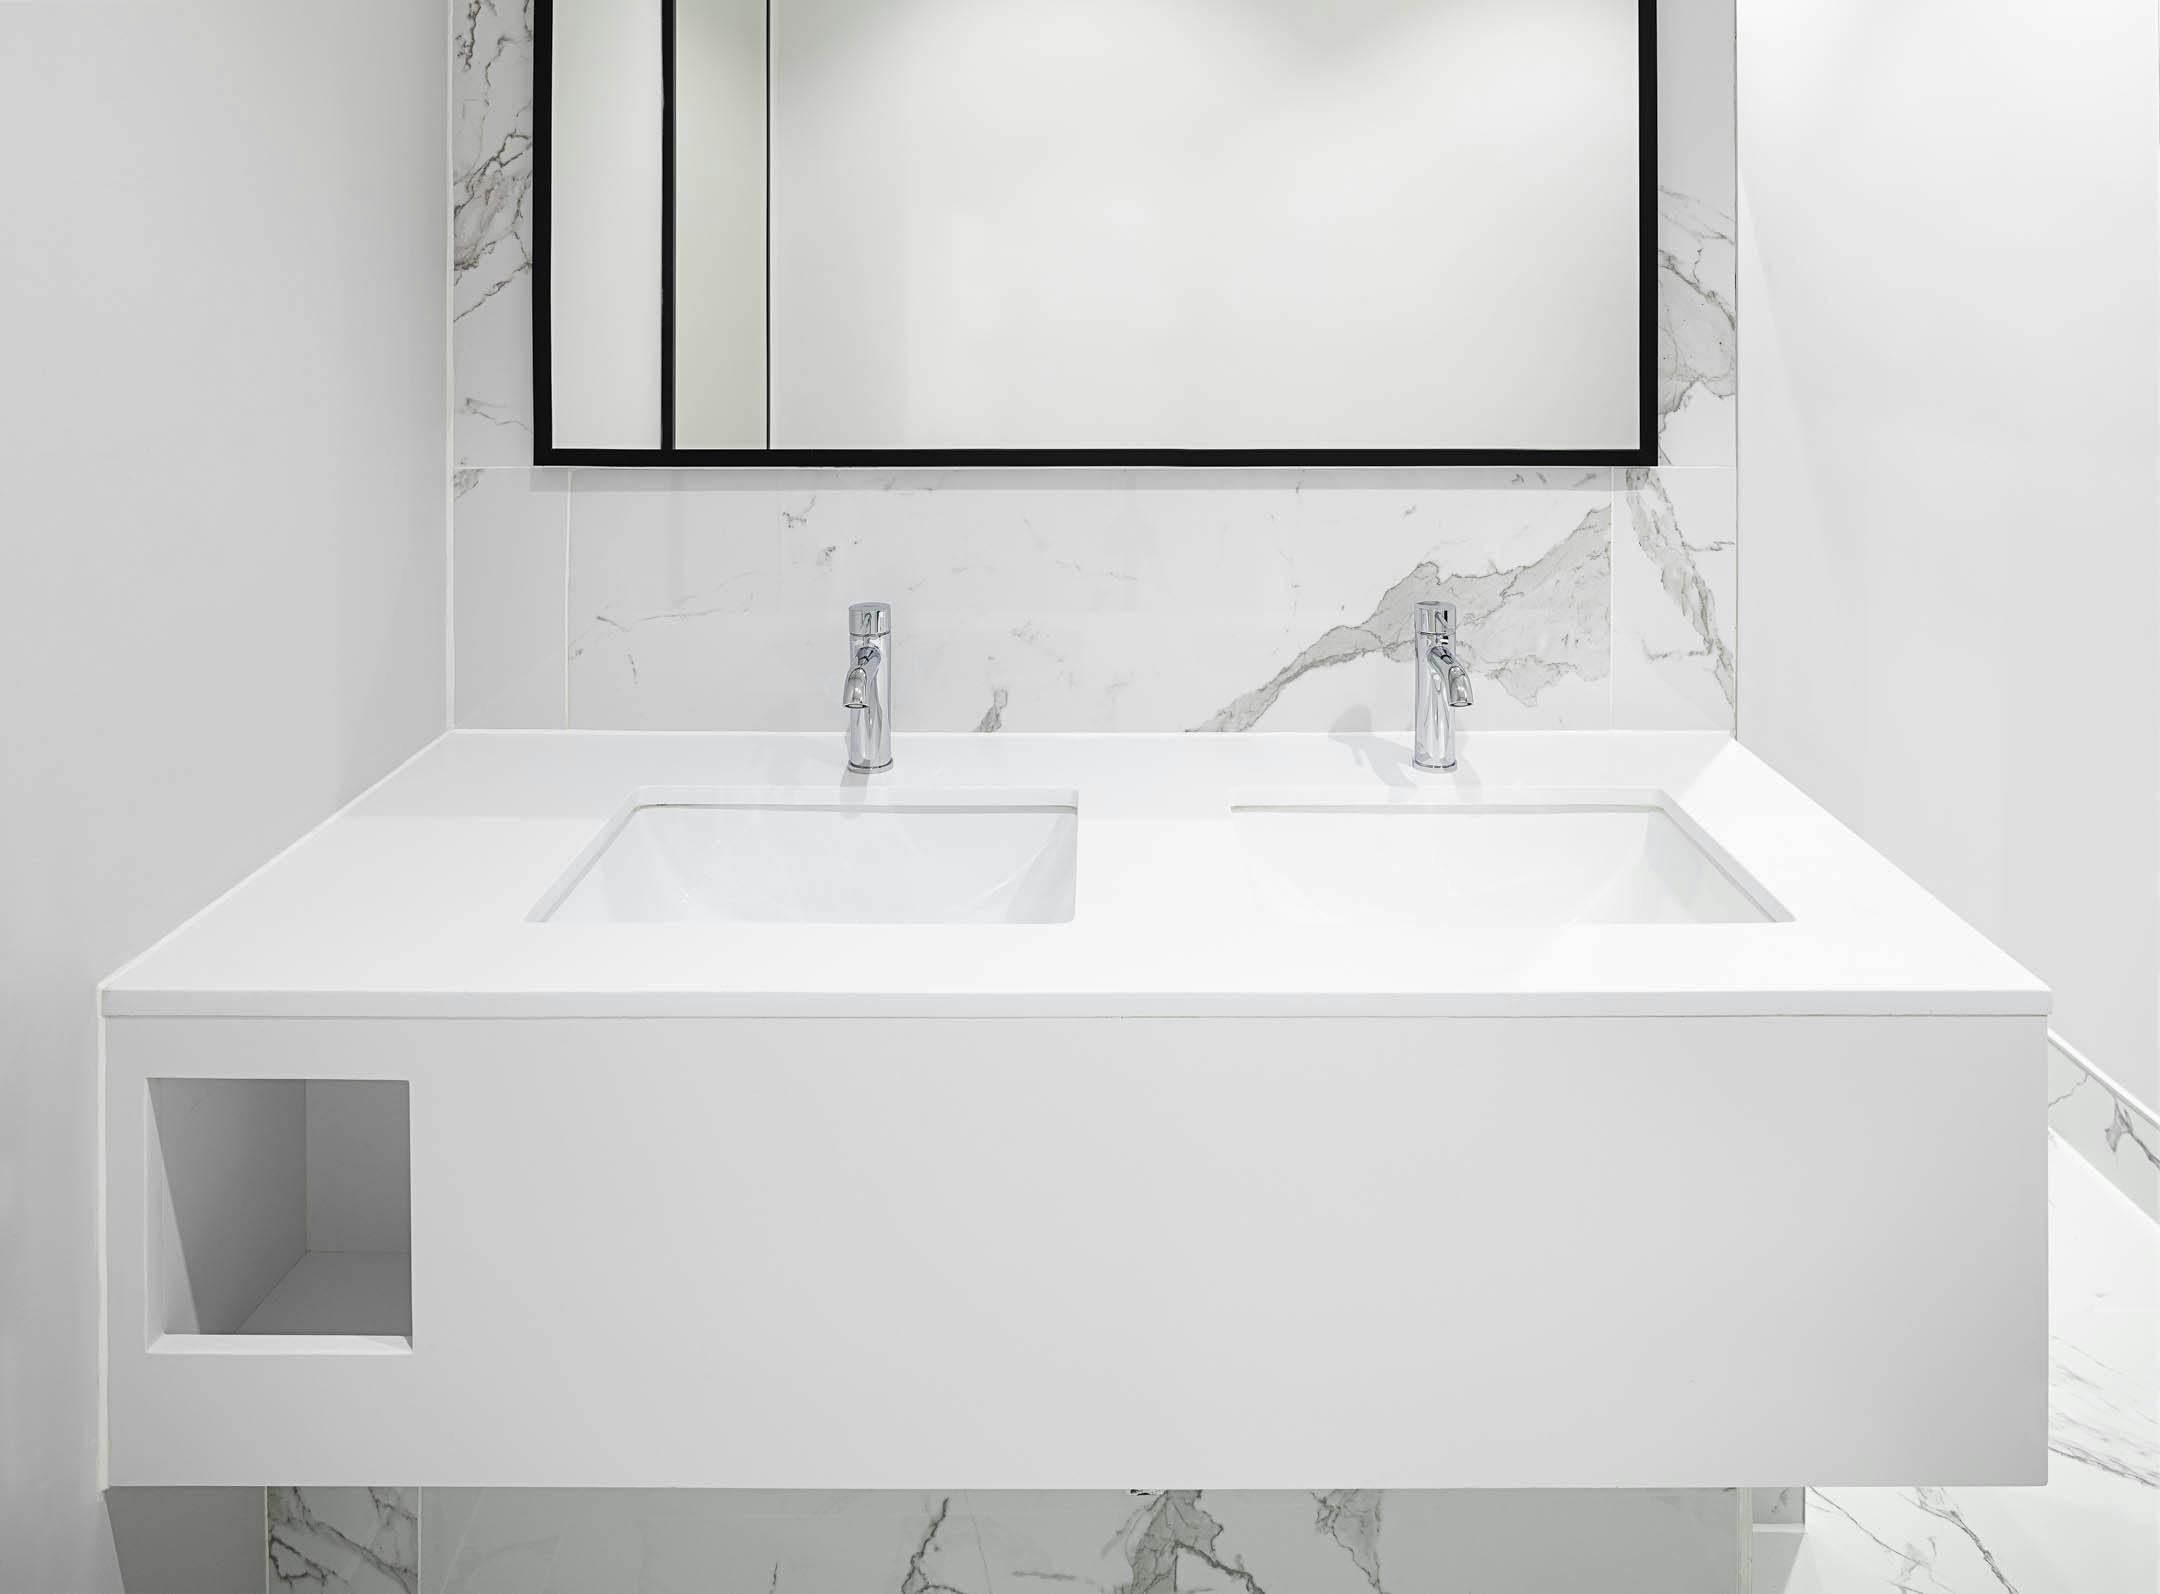 17 idées de salles de bains modernes et tendance  Bathroom pendant  lighting, Small bathroom vanities, Bathroom chandelier